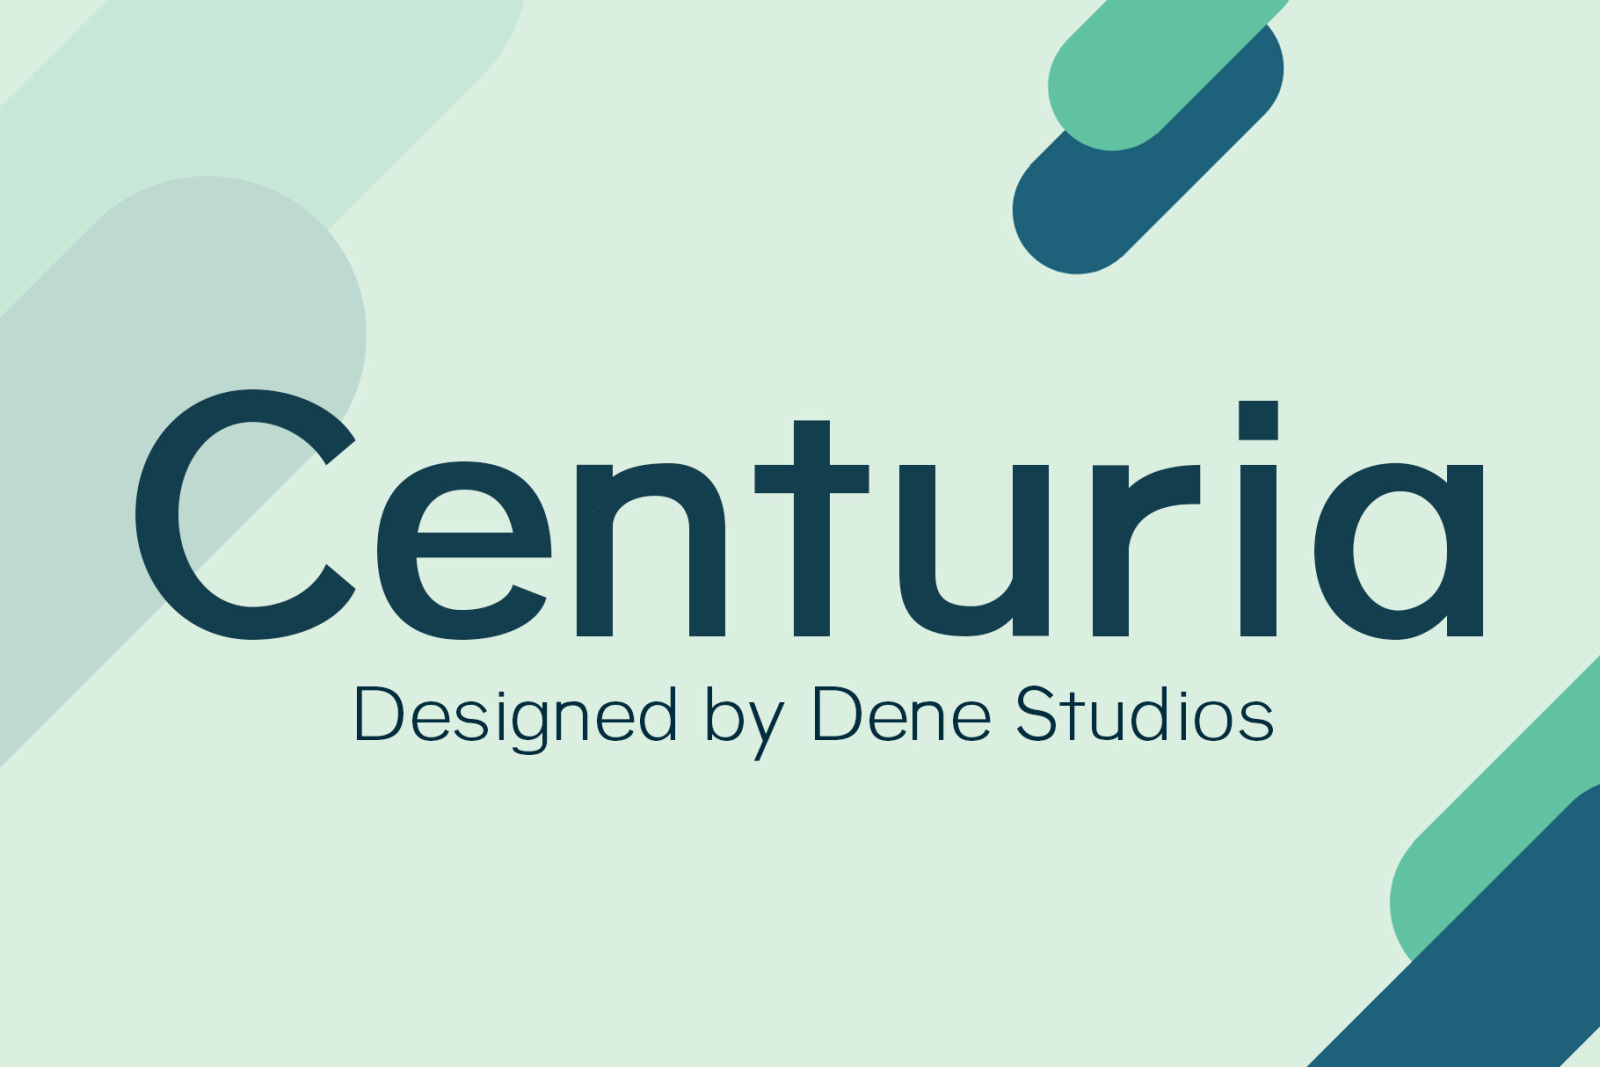 Centuria a display typeface